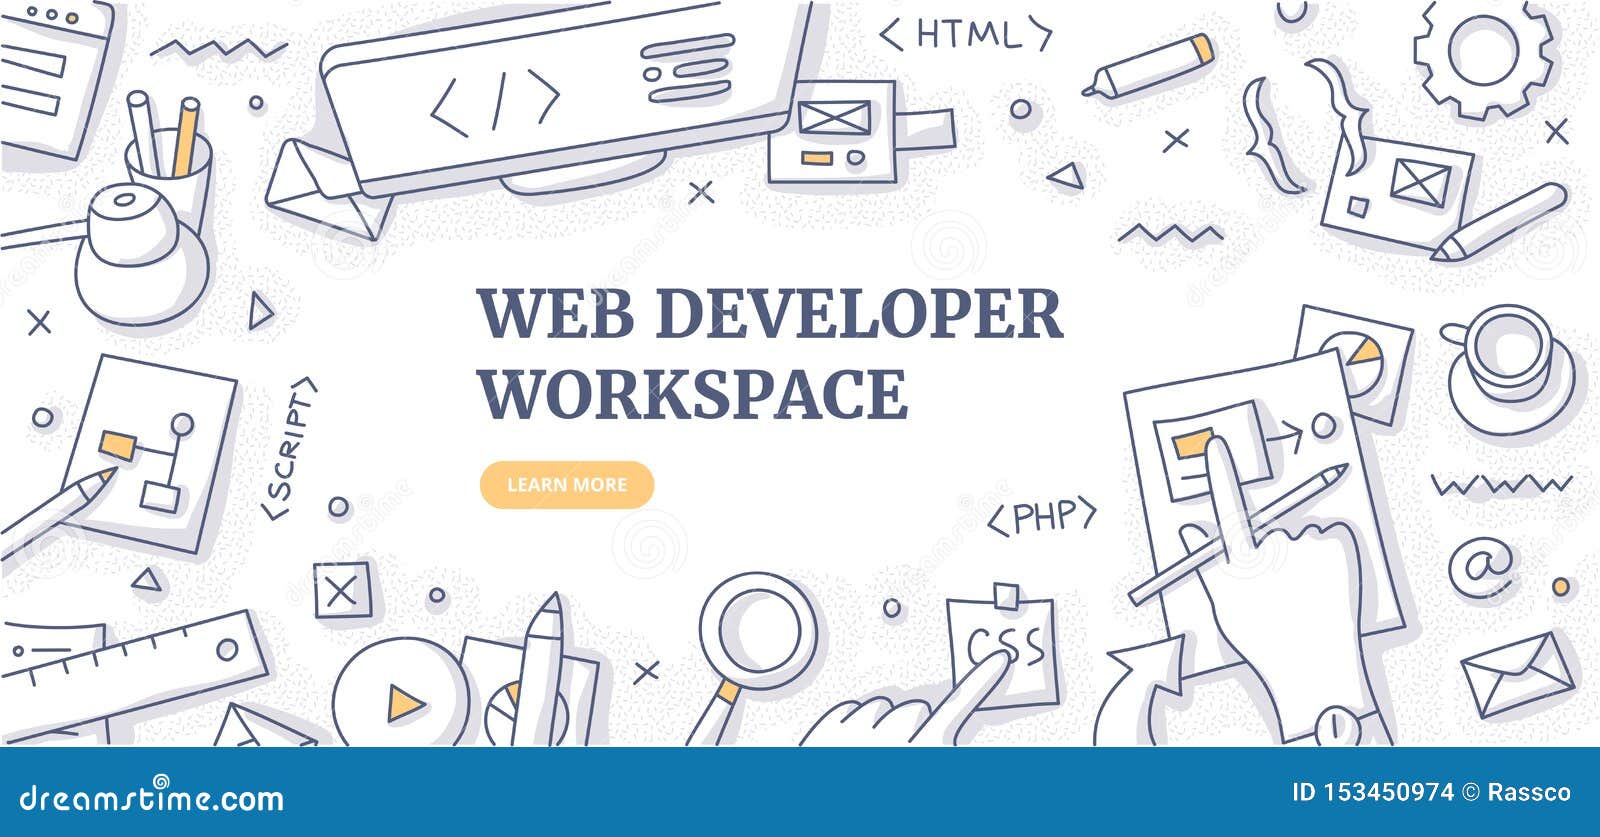 web developer workspace doodle background concept